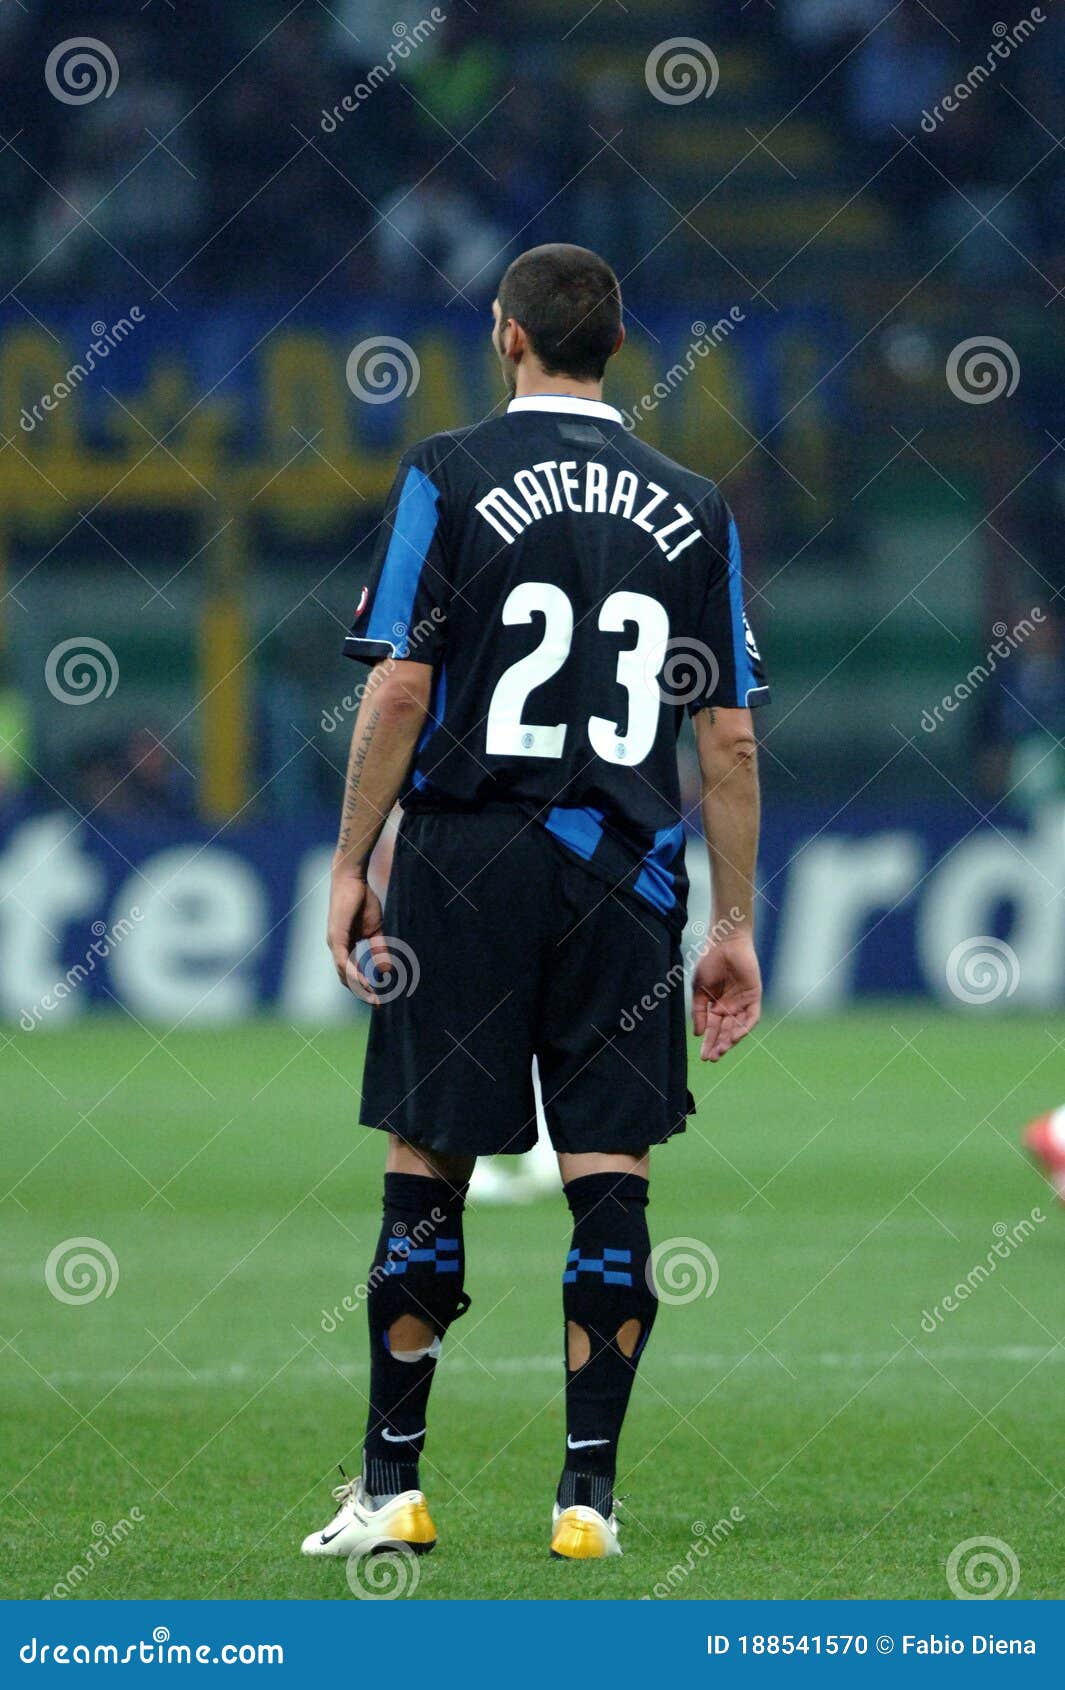 Marco Materazzi - Player profile